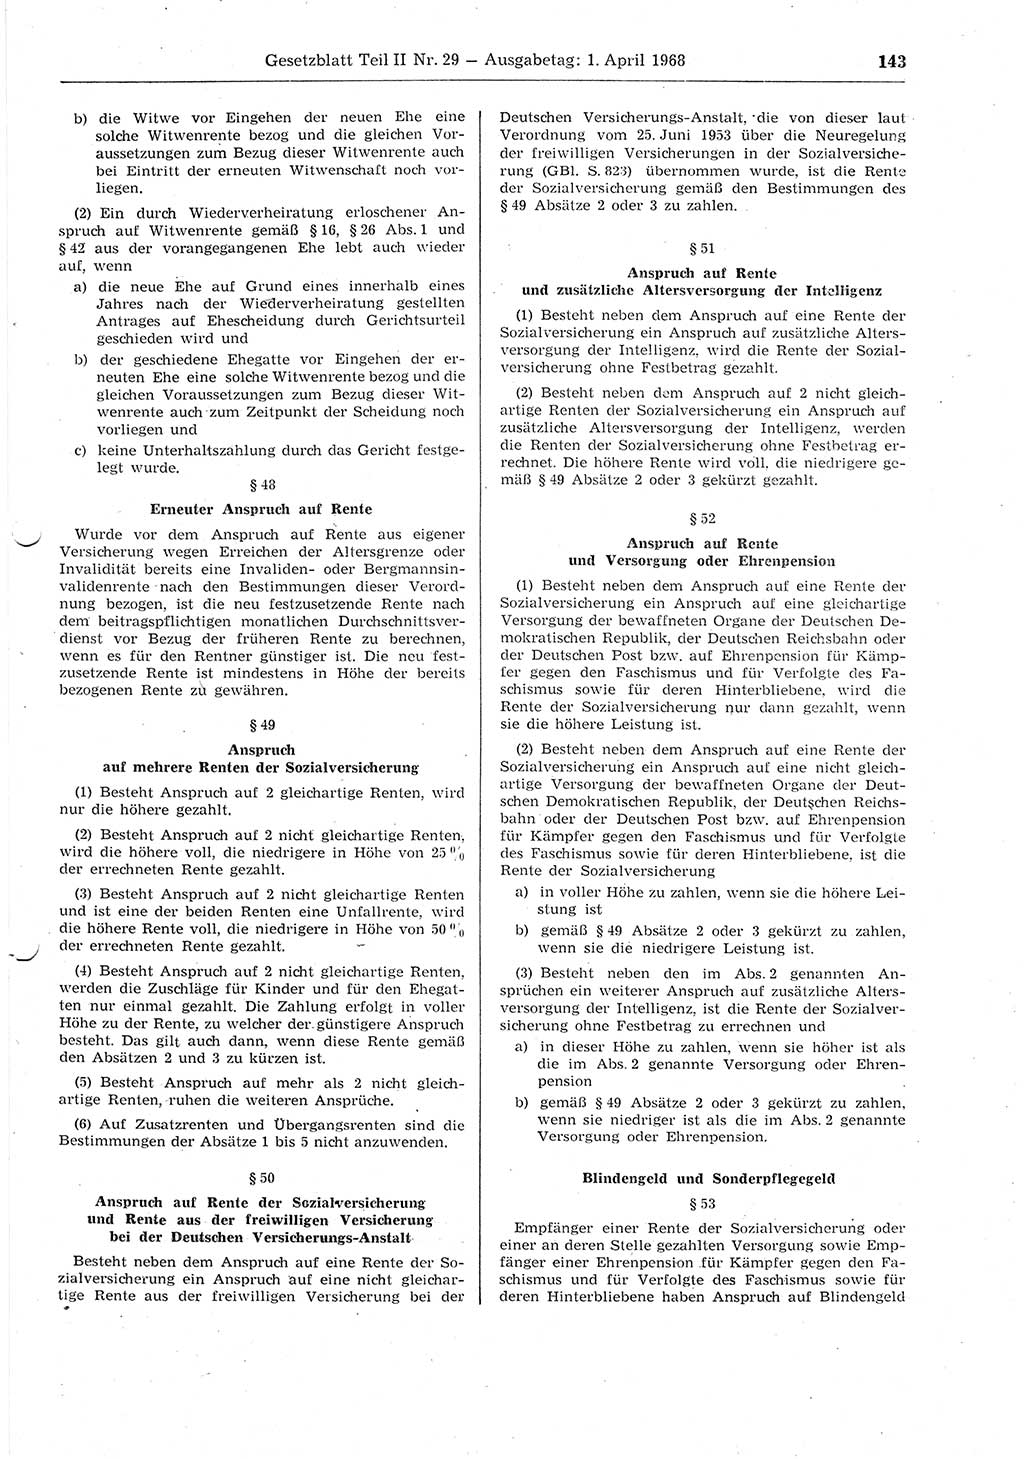 Gesetzblatt (GBl.) der Deutschen Demokratischen Republik (DDR) Teil ⅠⅠ 1968, Seite 143 (GBl. DDR ⅠⅠ 1968, S. 143)